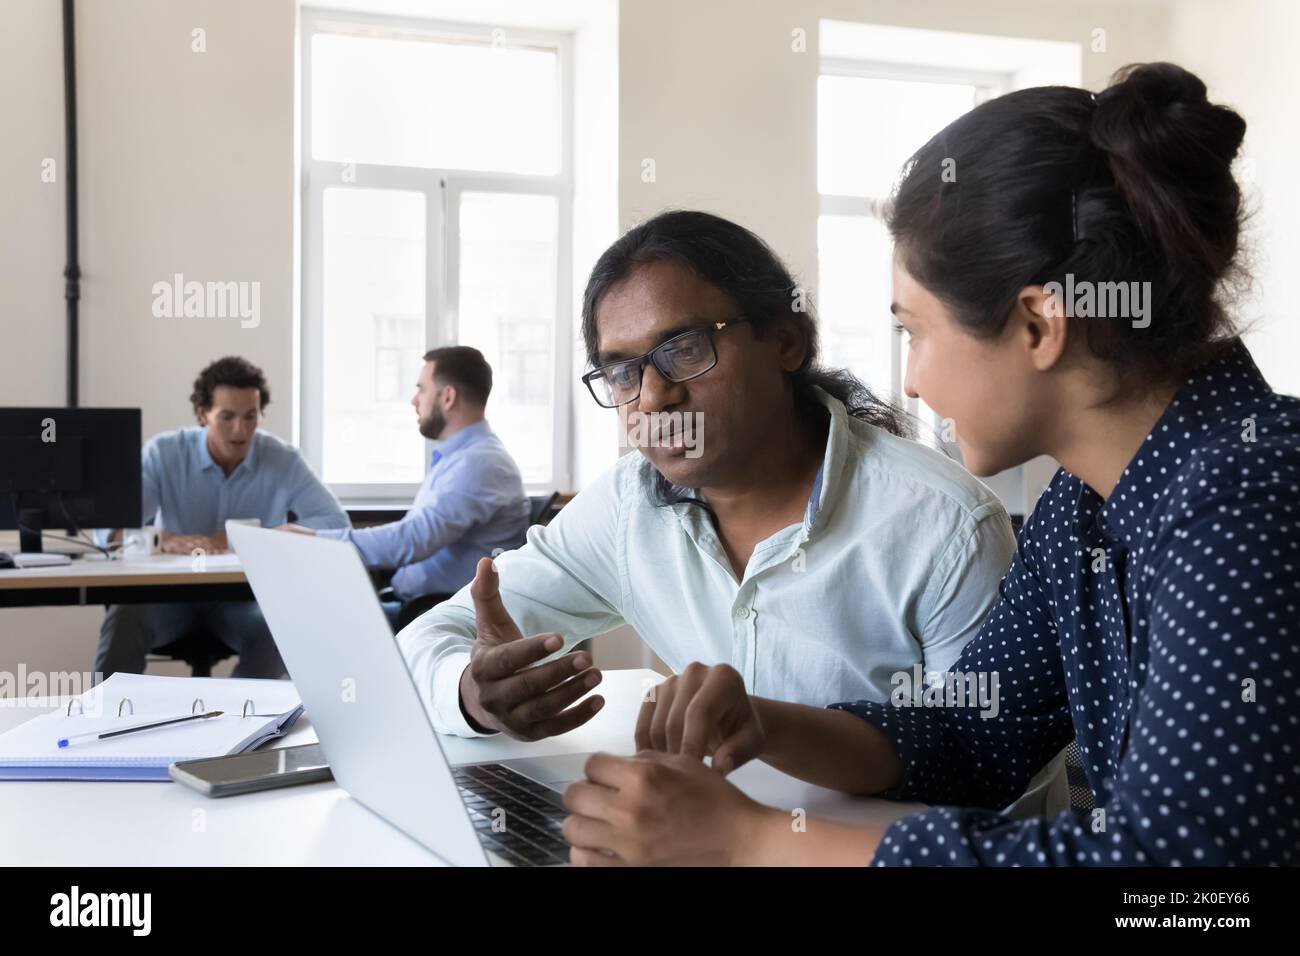 Deux employés indiens collaborent sur le projet, assis à la table de travail Banque D'Images